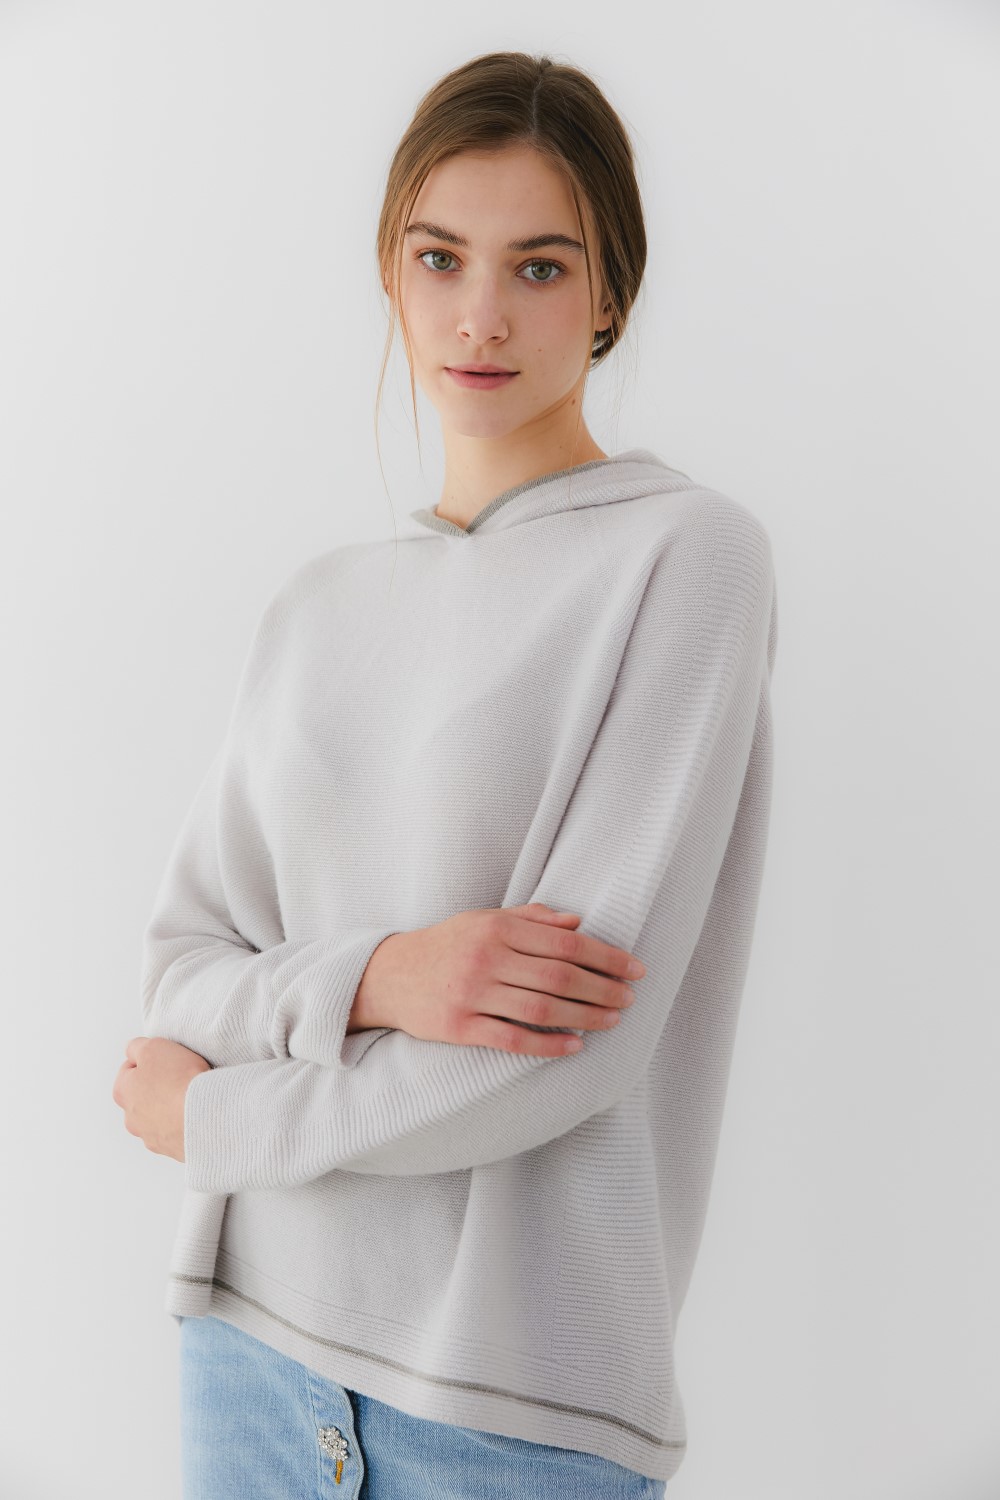 프리미엄 캐시미어 100 홀가먼트 후디 [Premium pure cashmere100 whole-garment knitting hoodie - Dove gray]